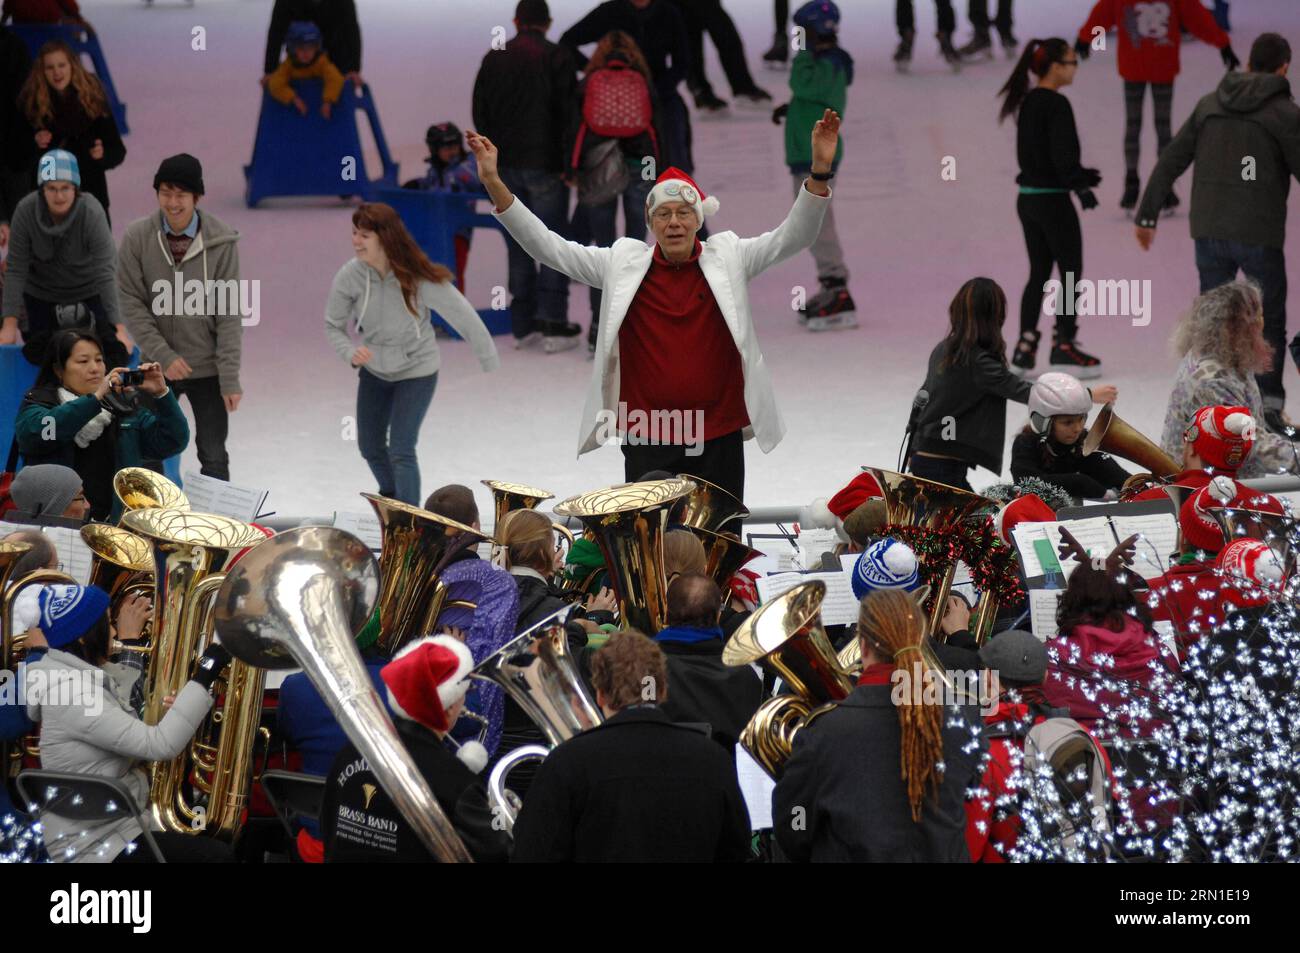 Tenorspieler und Bassist-Tuba-Spieler spielen Weihnachtslieder und Lieder während der 41. Jährlichen Tuba Christmas 2014-Veranstaltung neben der Robson Square Eislaufbahn in Vancouver, Kanada, am 21. Dezember 2014. Diese ungewöhnliche Weihnachtstradition hat sich in über 200 Städten auf der ganzen Welt etabliert. Die erste Tuba-Weihnachtsveranstaltung wurde 1974 im Rockefeller Center in New York präsentiert und wurde von Harvey Phillips zu Ehren seines Lehrers, dem verstorbenen William J. Bell, konzipiert. )(zhf) CANANDA-VANCOUVER-CHRISTMAS-TUBA SergeixBachlakov PUBLICATIONxNOTxINxCHN Tenor- und Bass-Tuba-Spieler spielen Weihnachtslieder und Lieder d Stockfoto